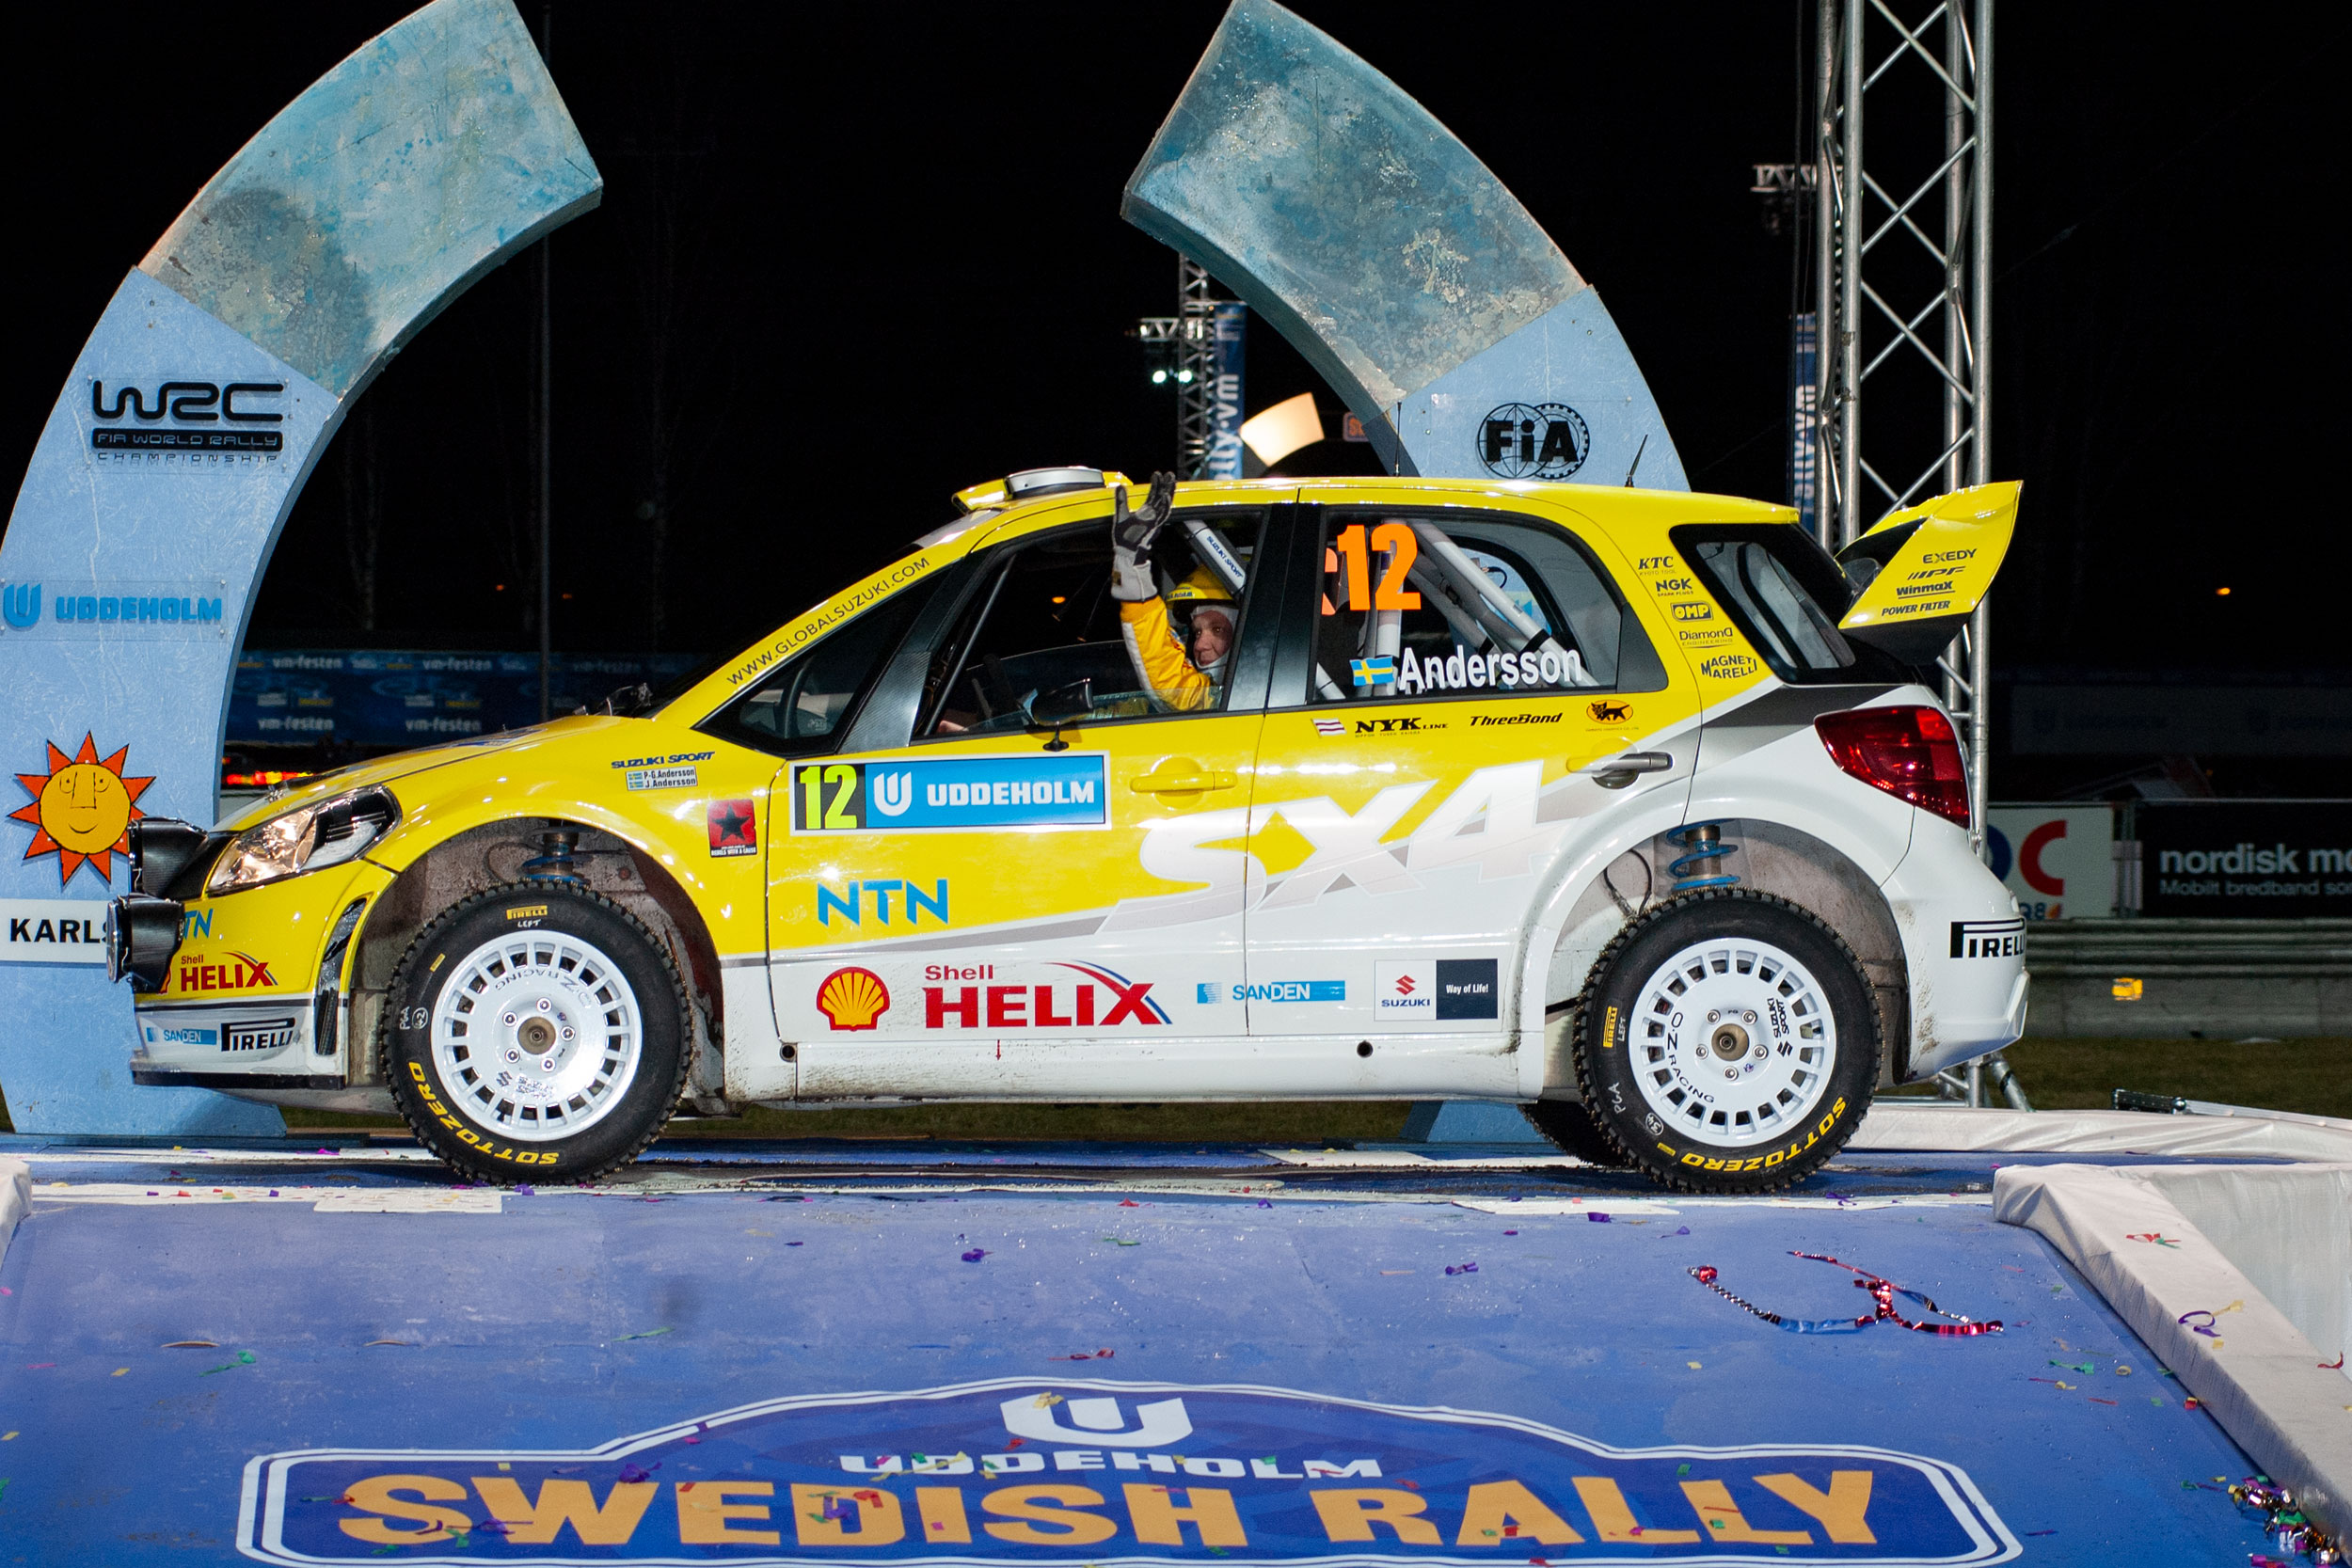 P G Anderson, Suzuki WRC, Rally Sweden, Podium, W Nothers